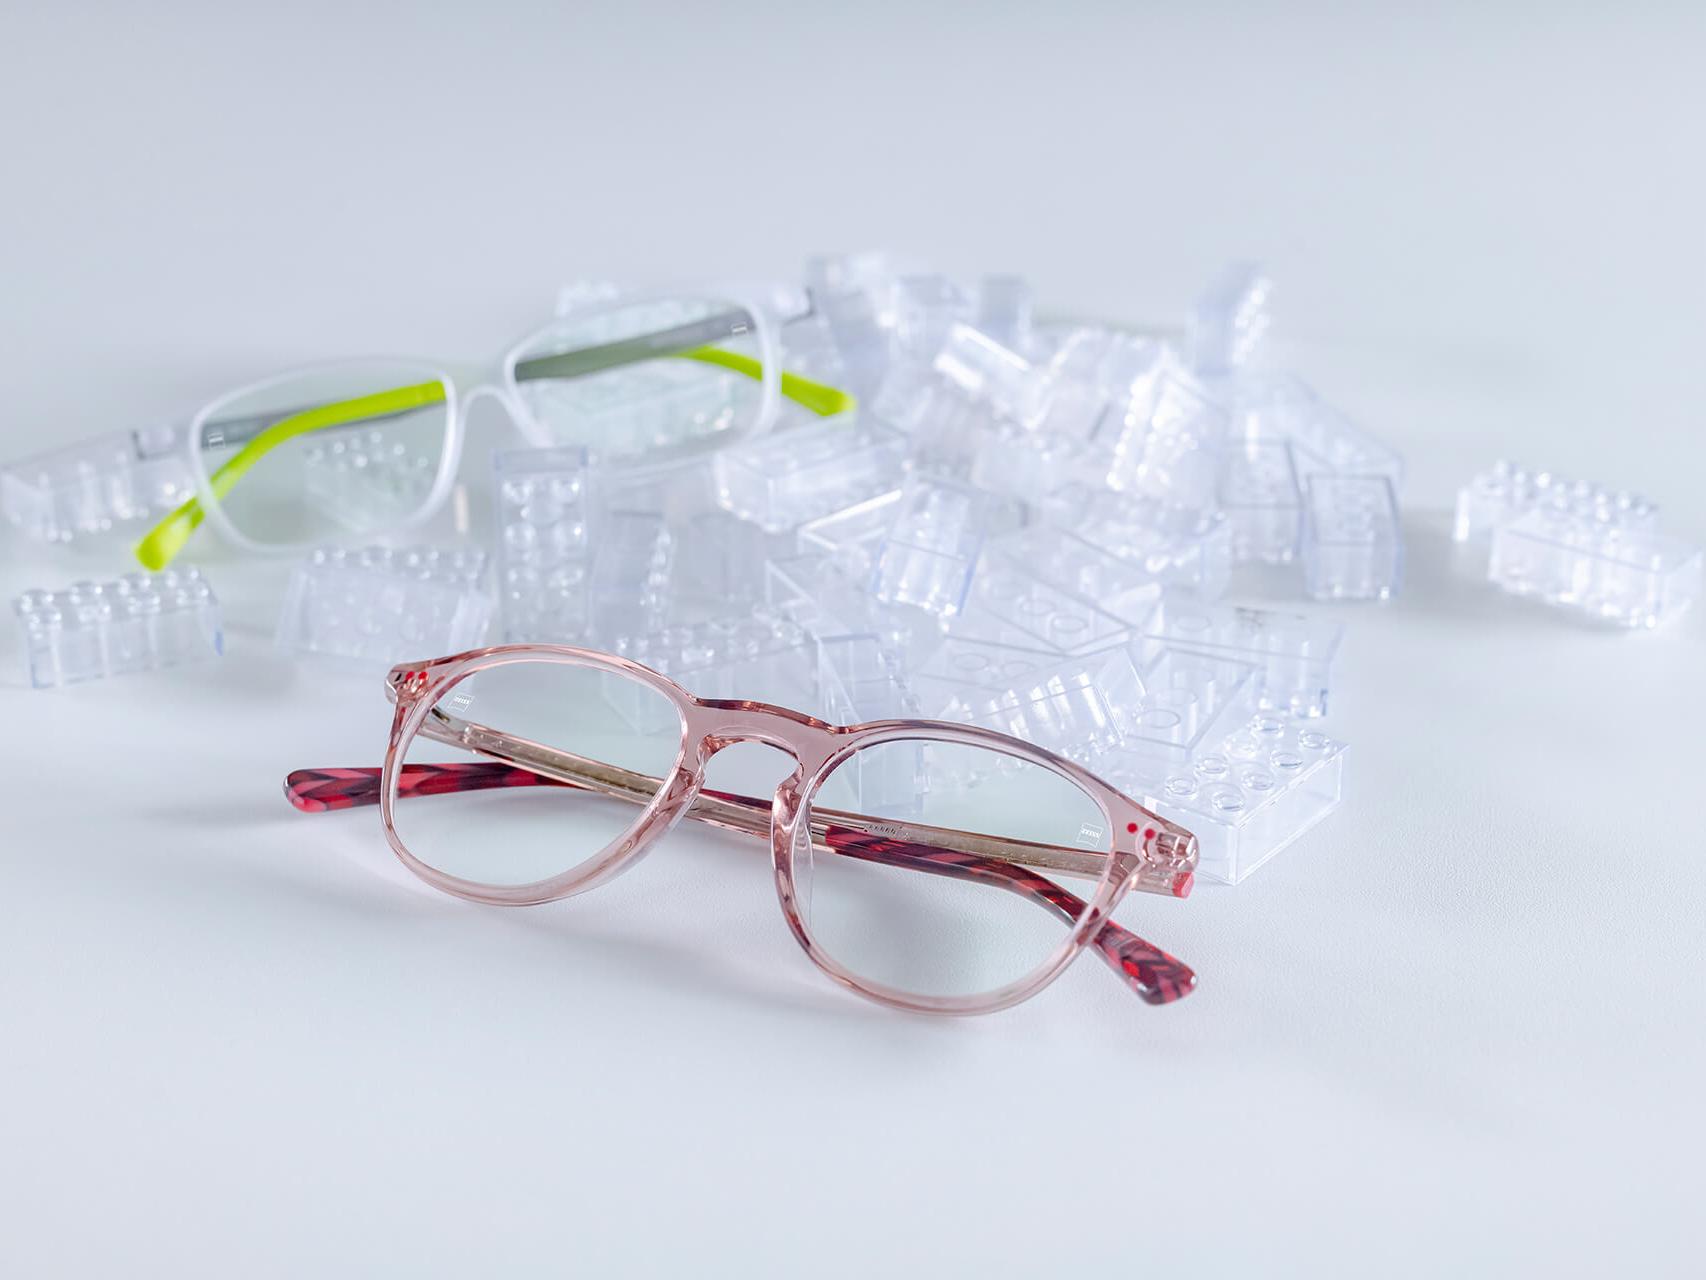 两副采用了蔡司钻立方爱动膜镜片的眼镜 眼镜放置于透明的玩具积木之间。